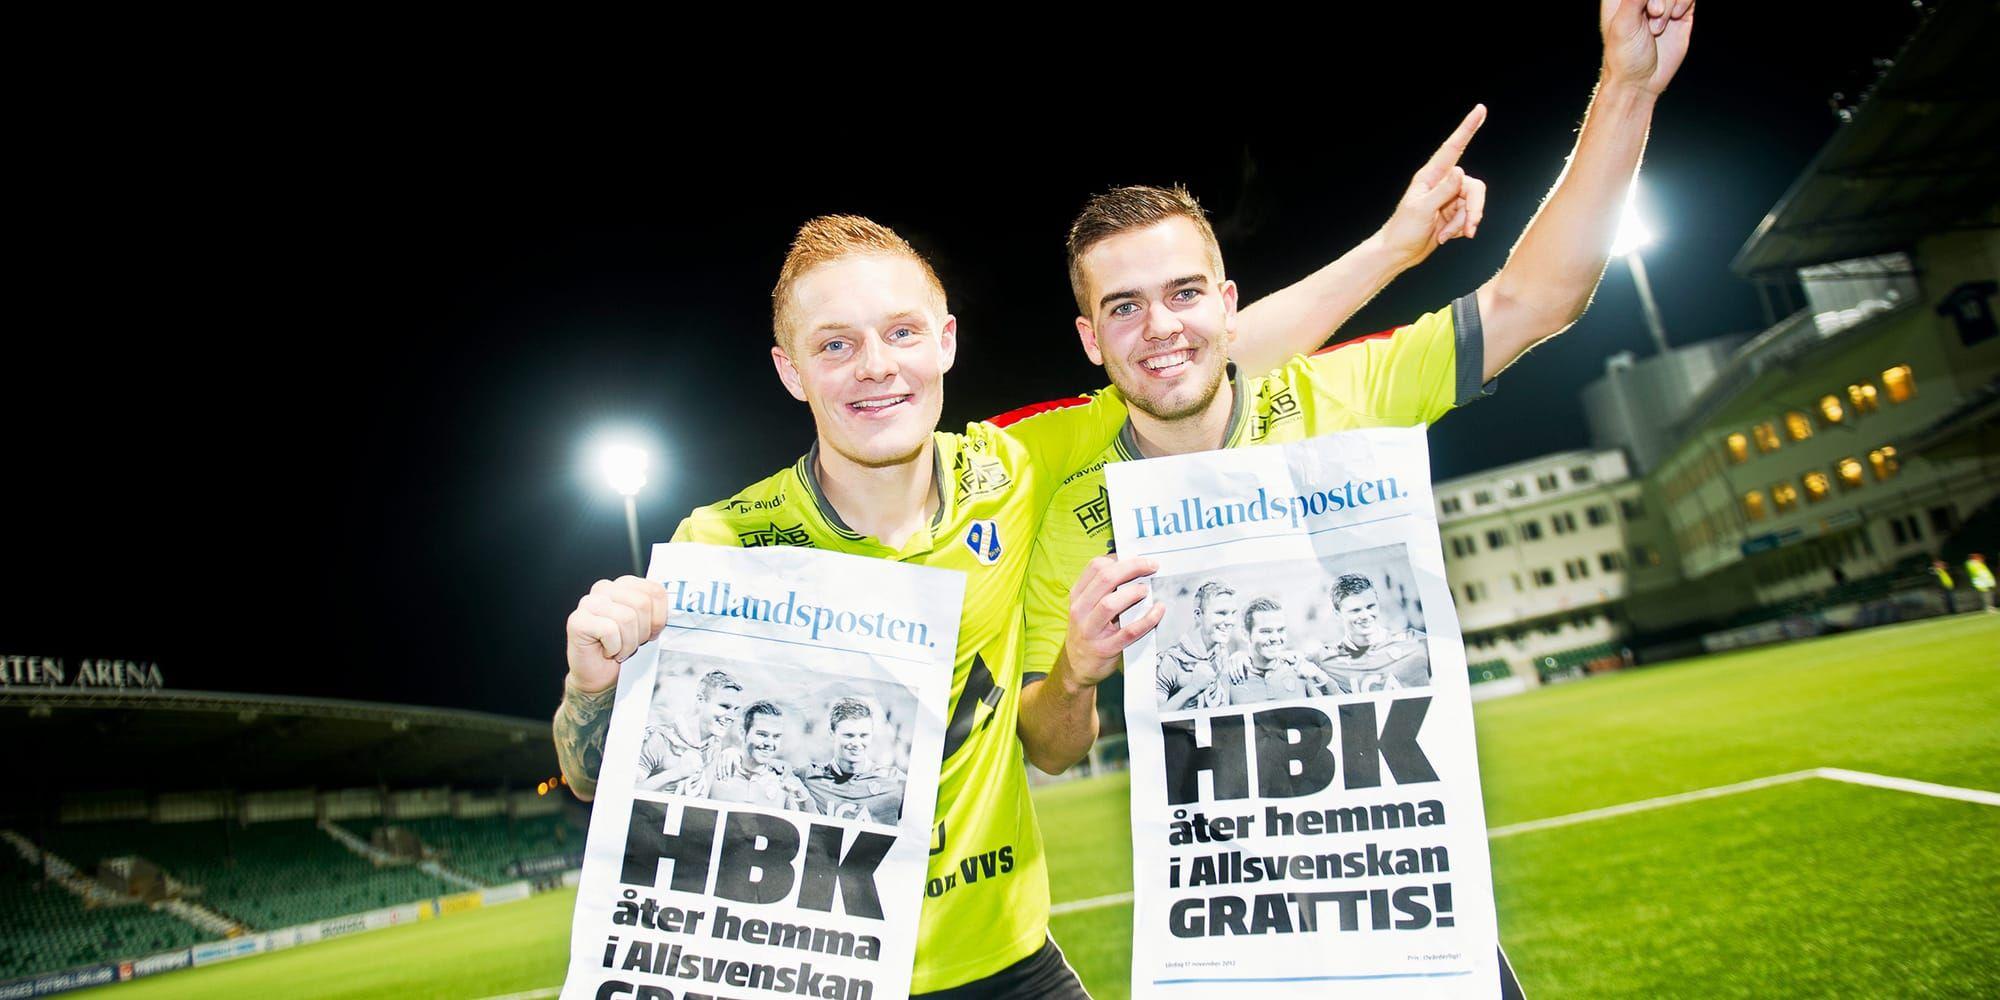 
Kvalglädje. Ett HBK i starkt poängbehov hoppas på en repris från kvalet 2012 när Gudjon Baldvinsson (till vänster) och ”Kiddi” Steindorsson firade allsvensk comeback i Sundsvall. 